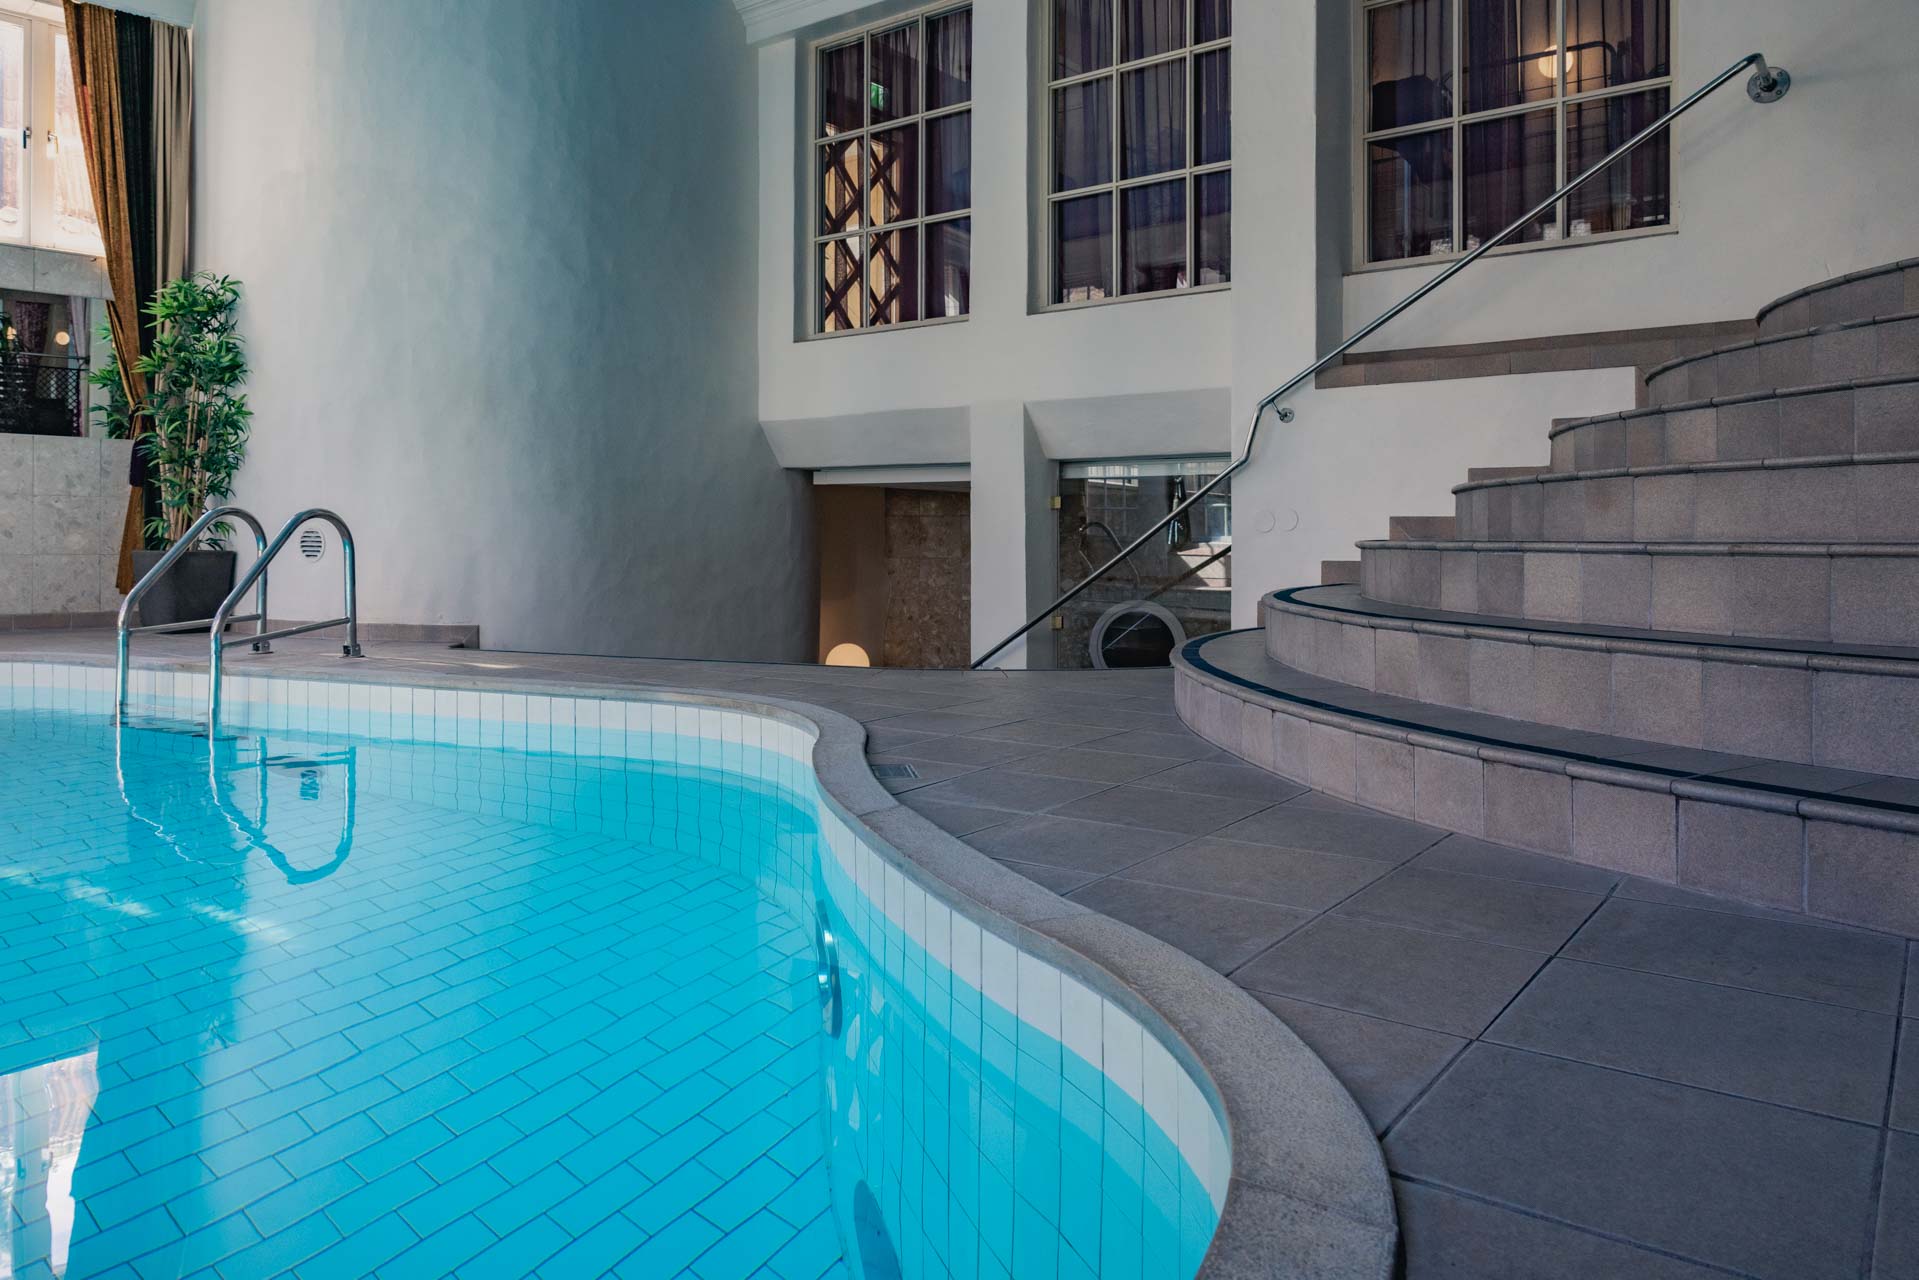 Njut av pool och bastu på vårt hotell i Visby under er konferens på Gotland